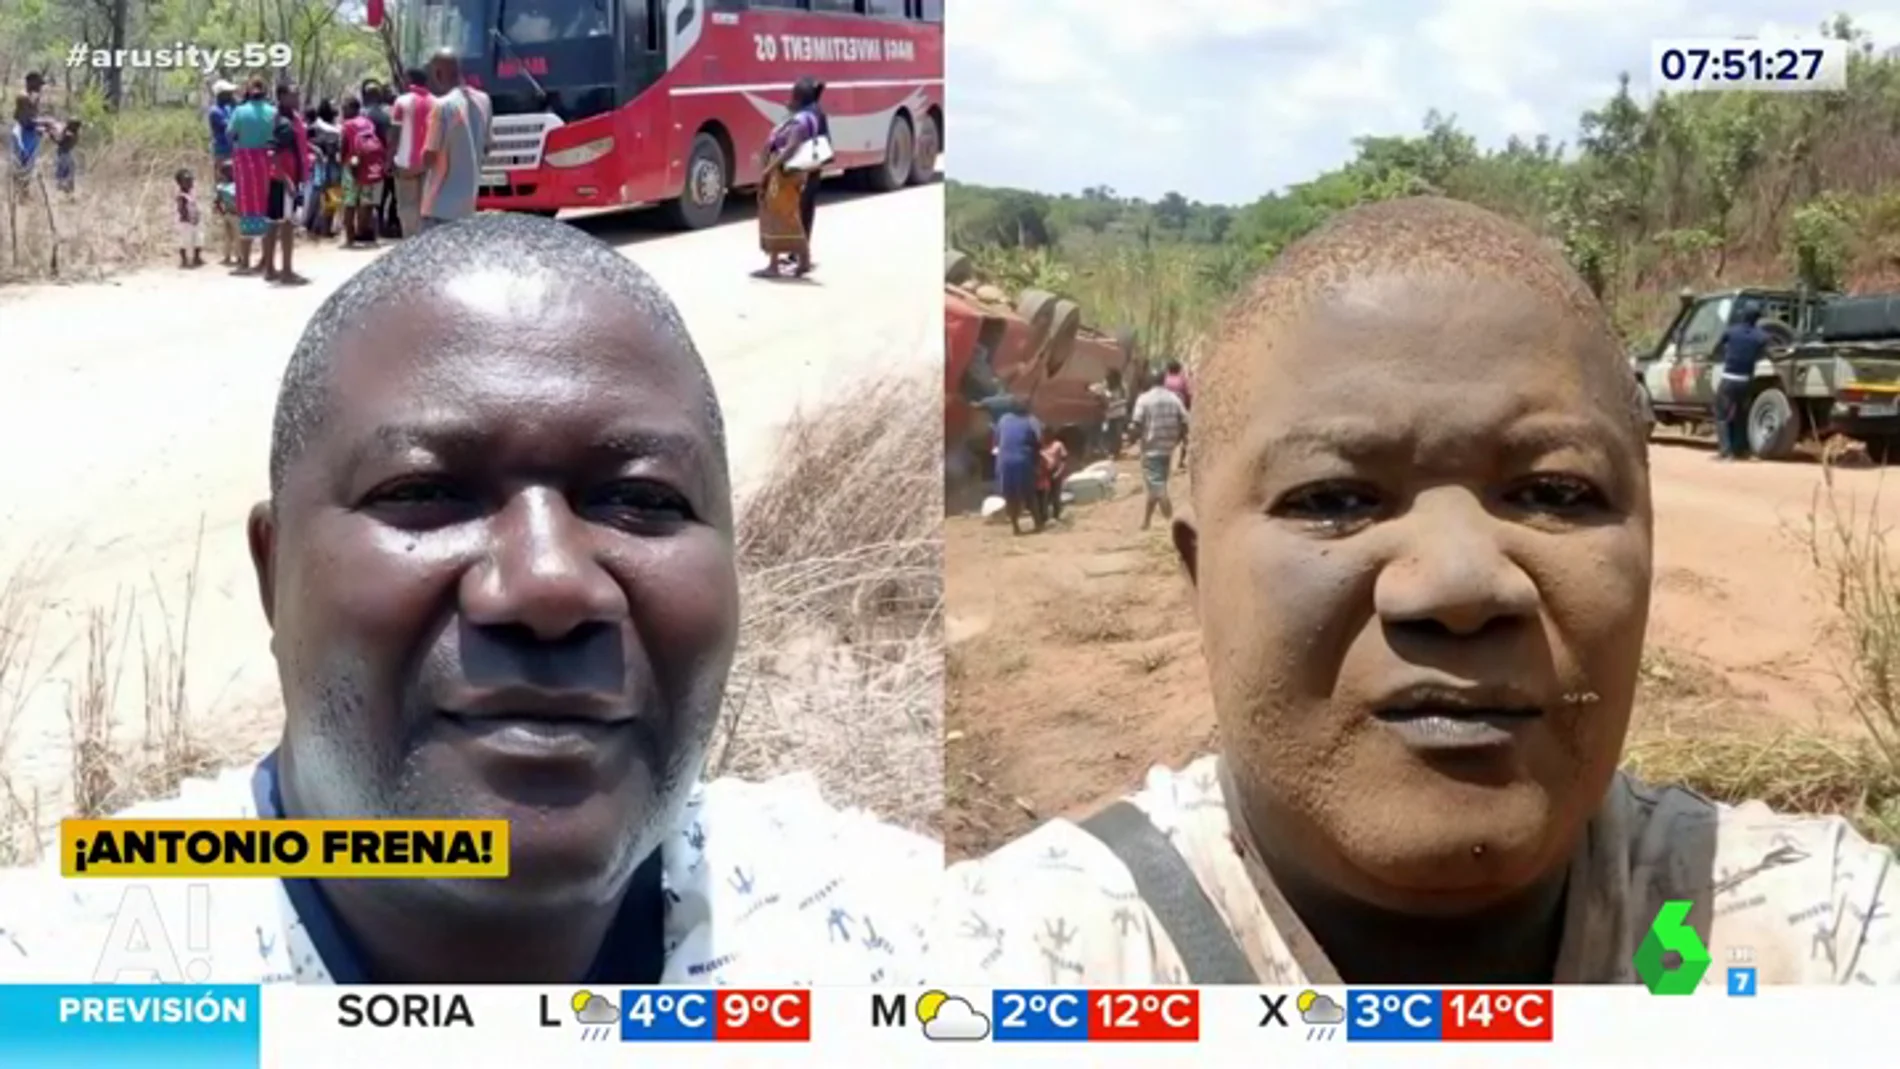 Los comentados 'selfies' de un hombre antes y después de un accidente de autobús